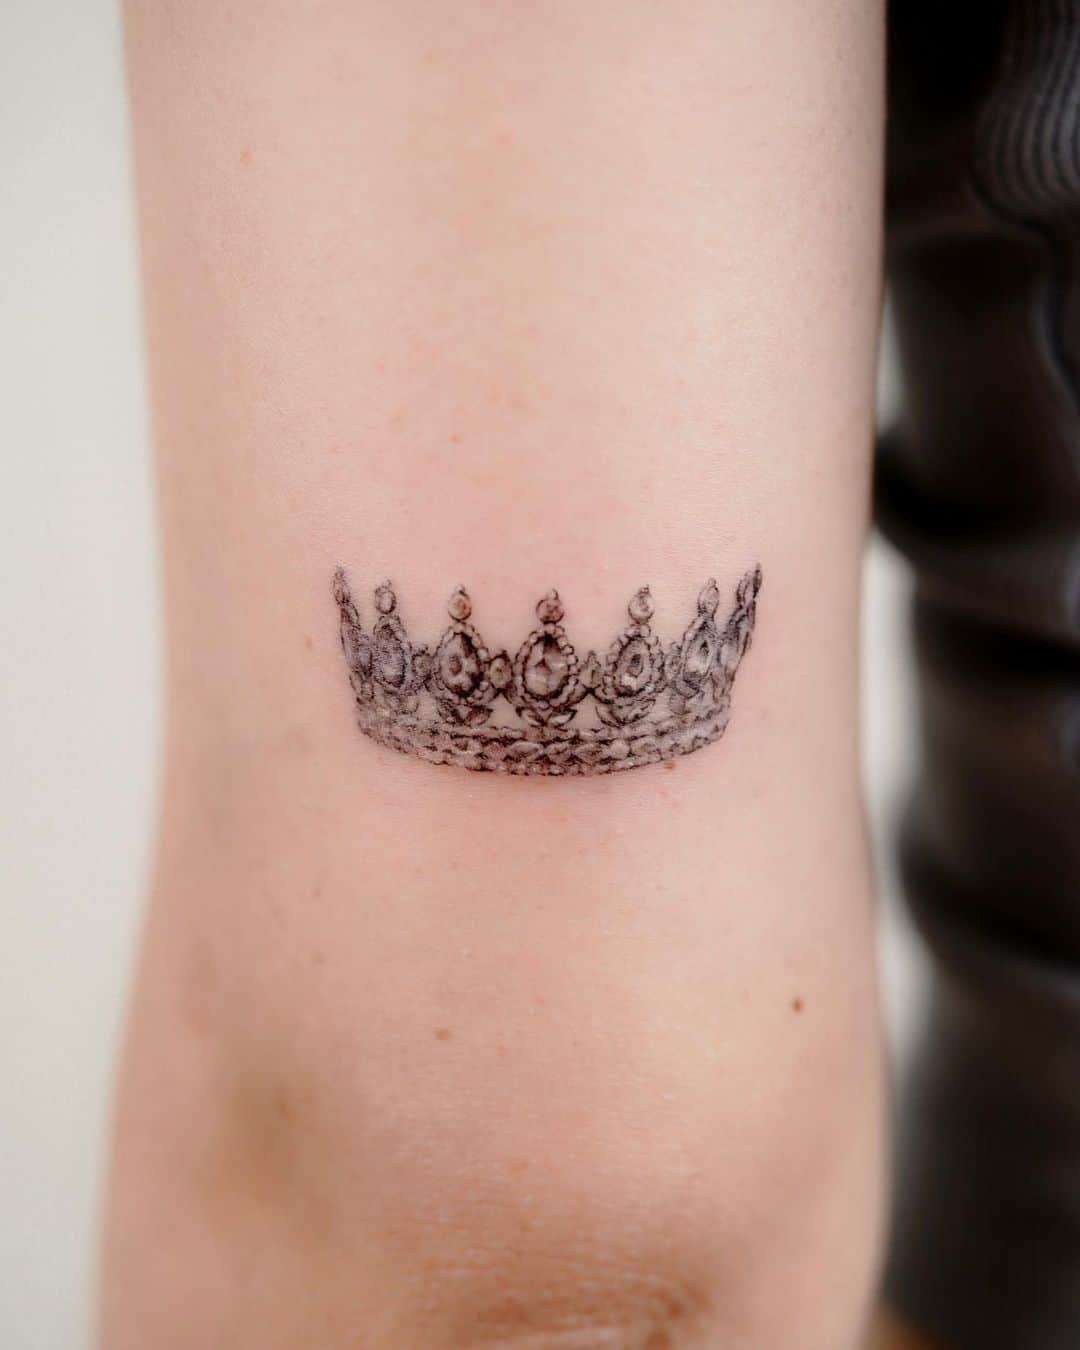 Tattoo by me @lilotatt #tattooartist #tattoo #crown #crowntattoos  #tattoostyle #lilo #lilotattoo #lilotatt | Instagram